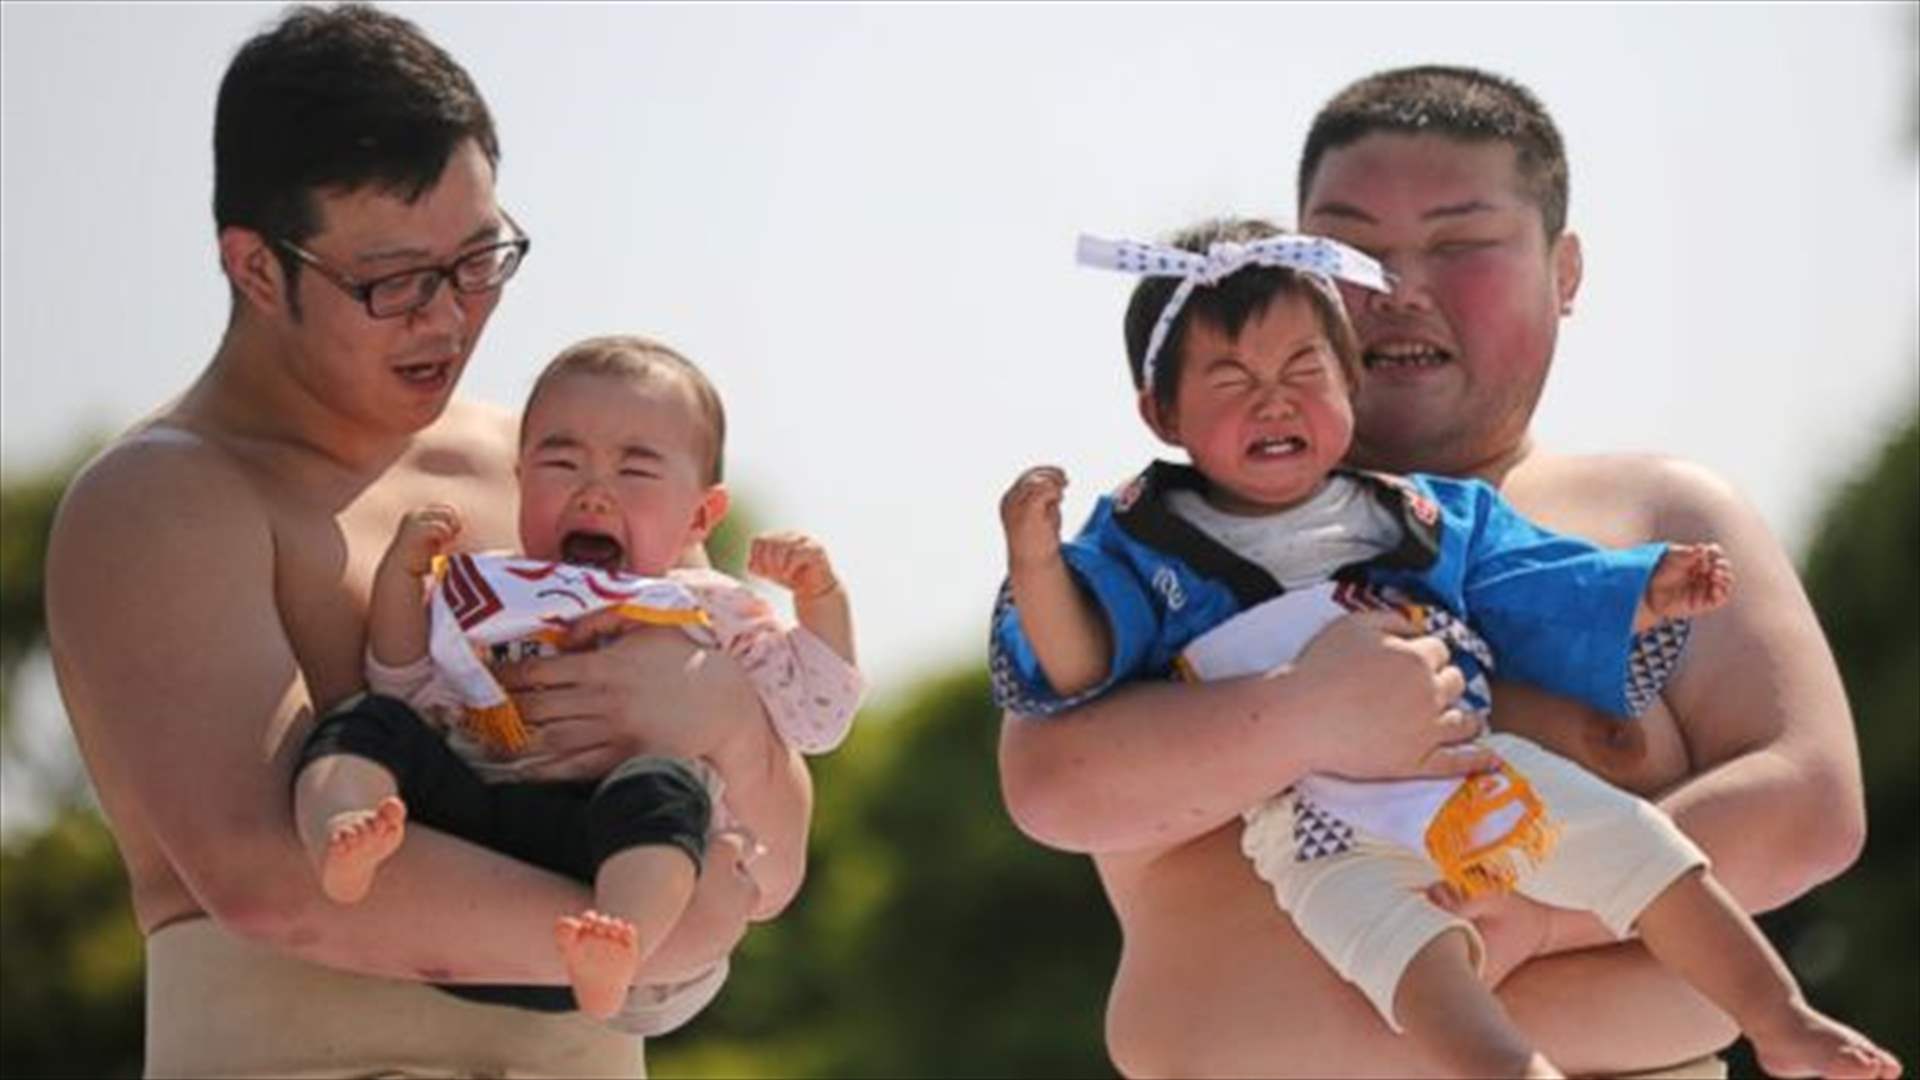 بعد توقف لأربع سنوات... مهرجان &quot;سومو بكاء الأطفال&quot; يعود في اليابان (صور)